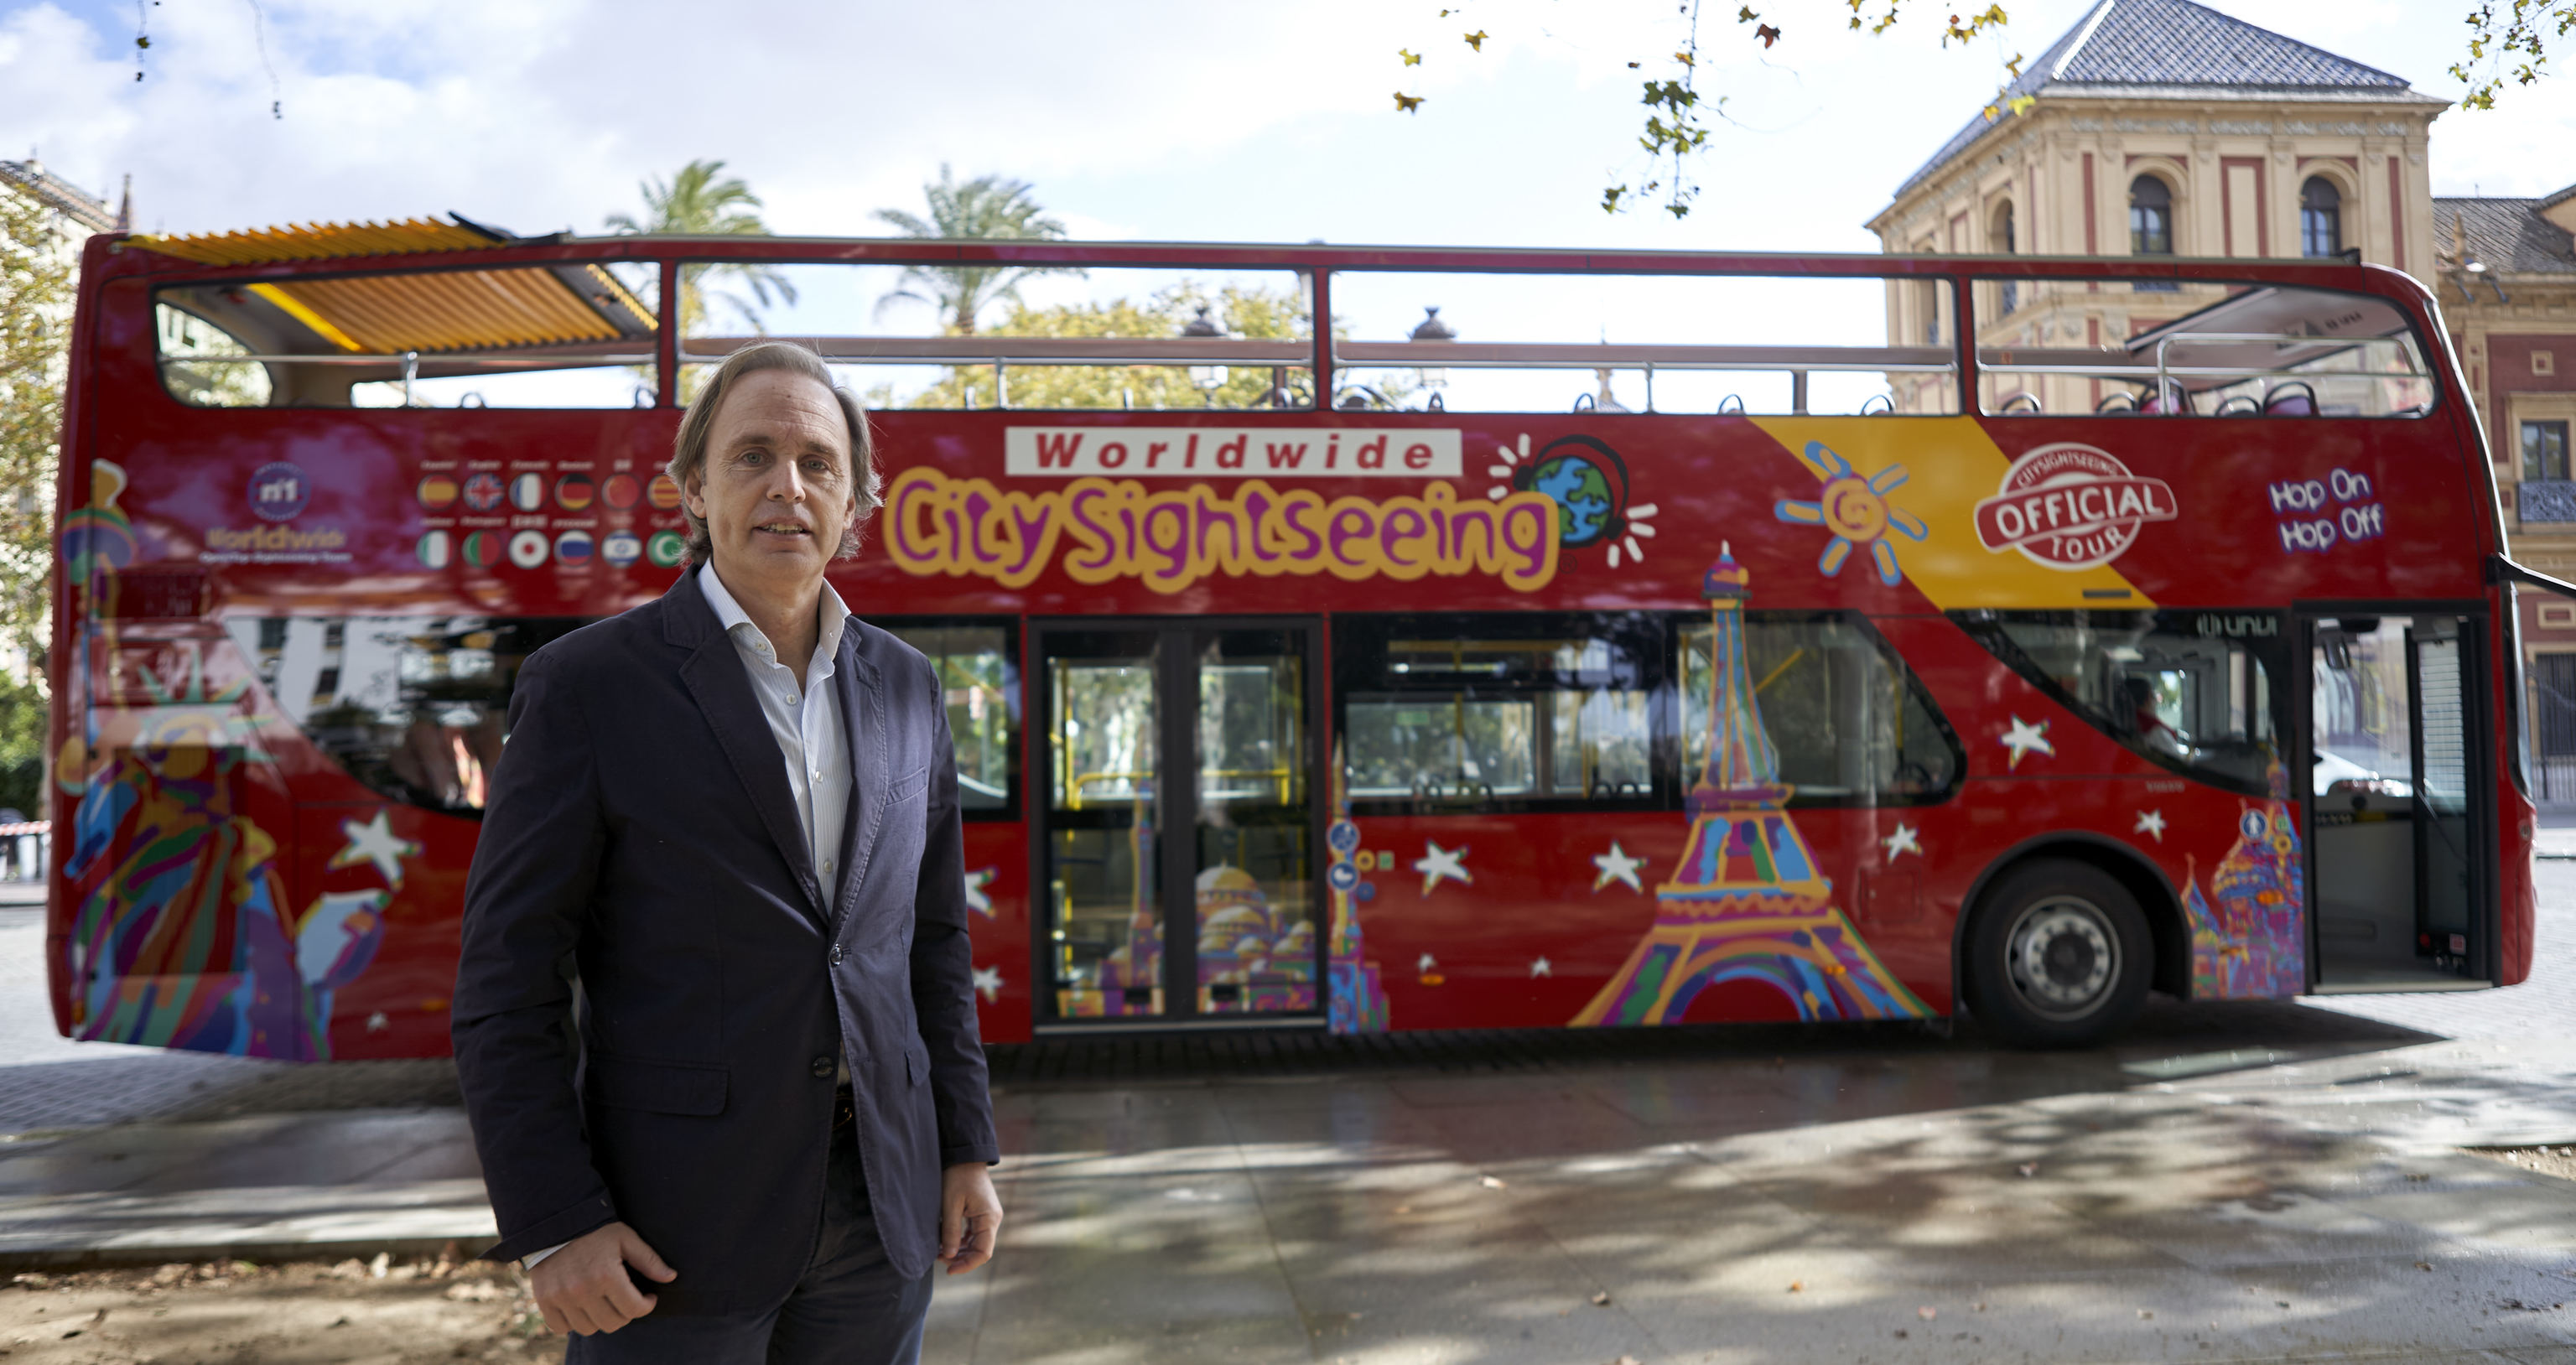 Enrique Ybarra, el 'rey de los autobuses turísticos': "Ya estamos estudiando cómo se visitarán las ciudades dentro de 10 años"